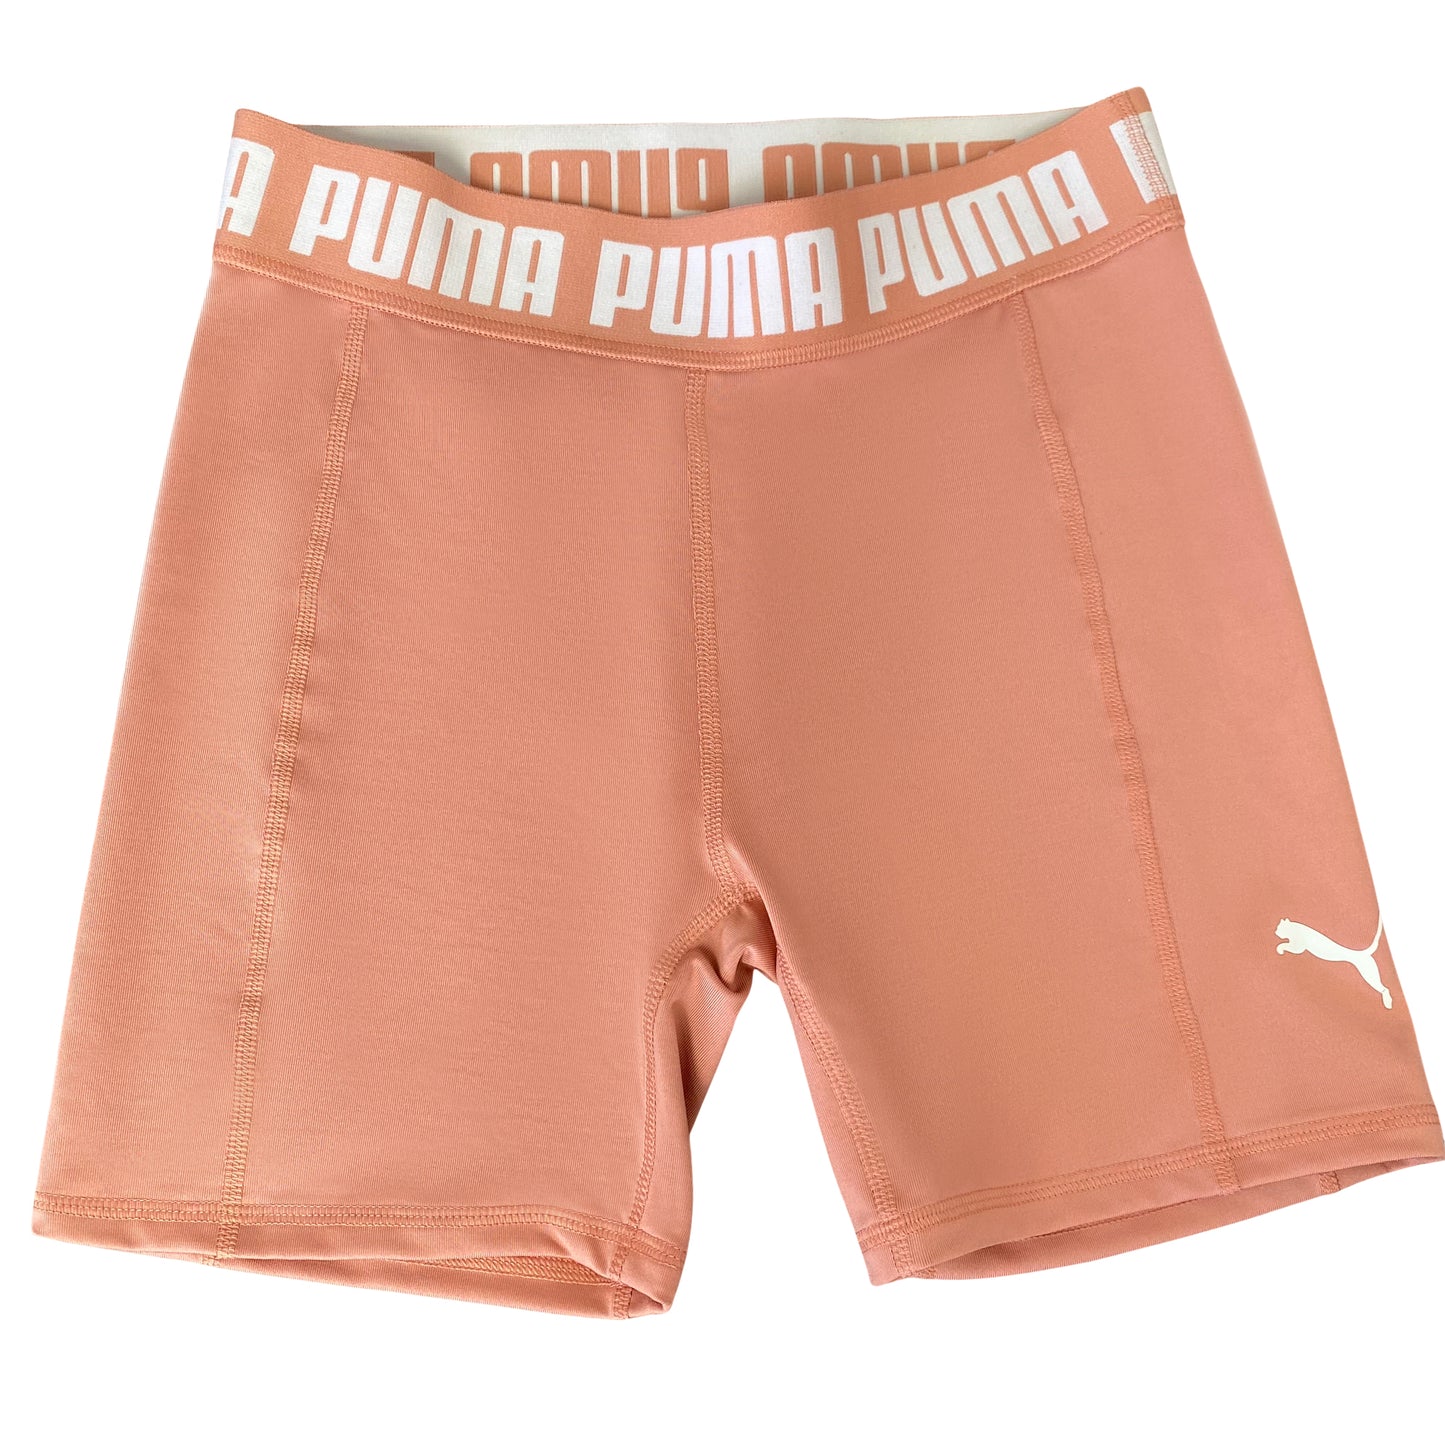 PUMA bike shorts | size small